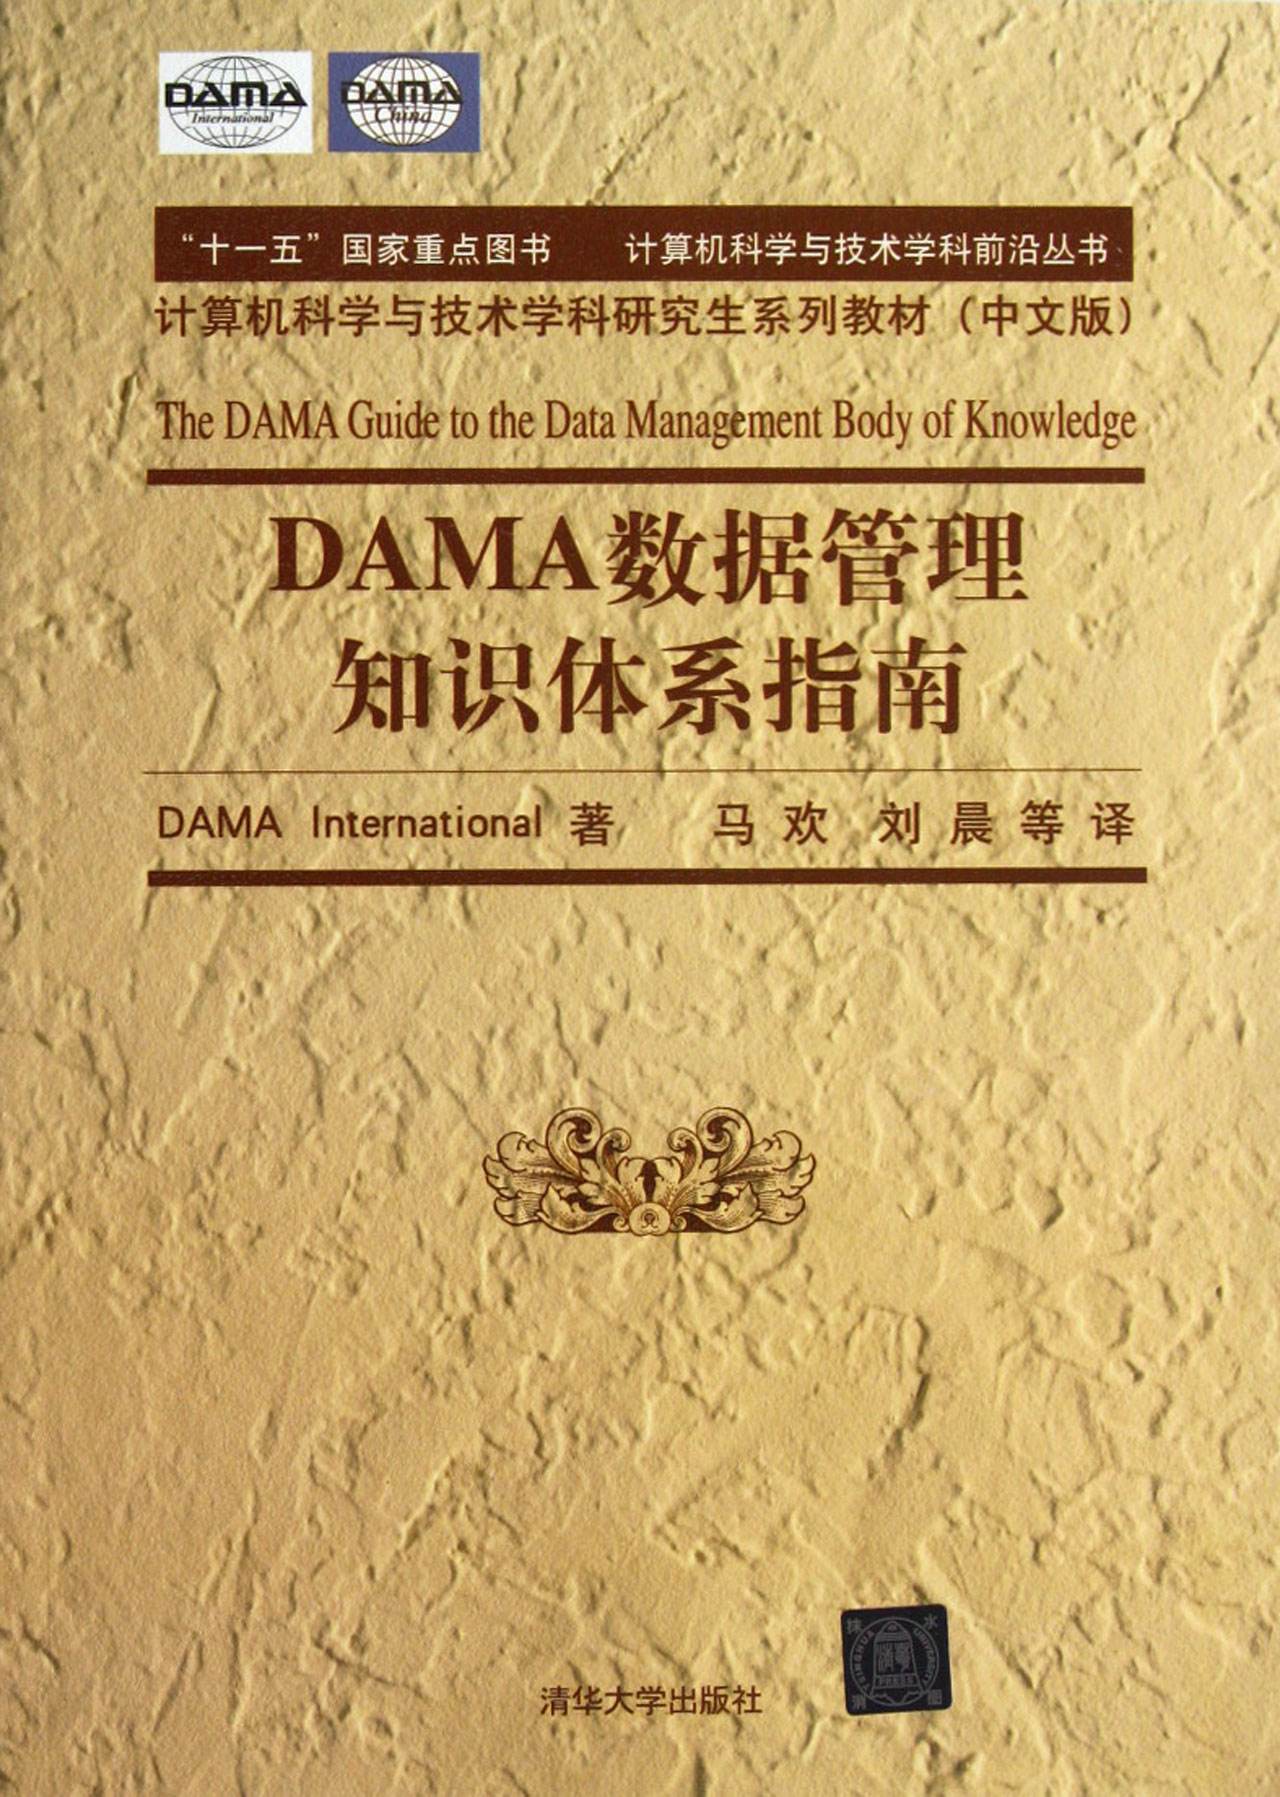 DAMA 数据管理知识体系指南-数据管理方方面面的一部代表性著作